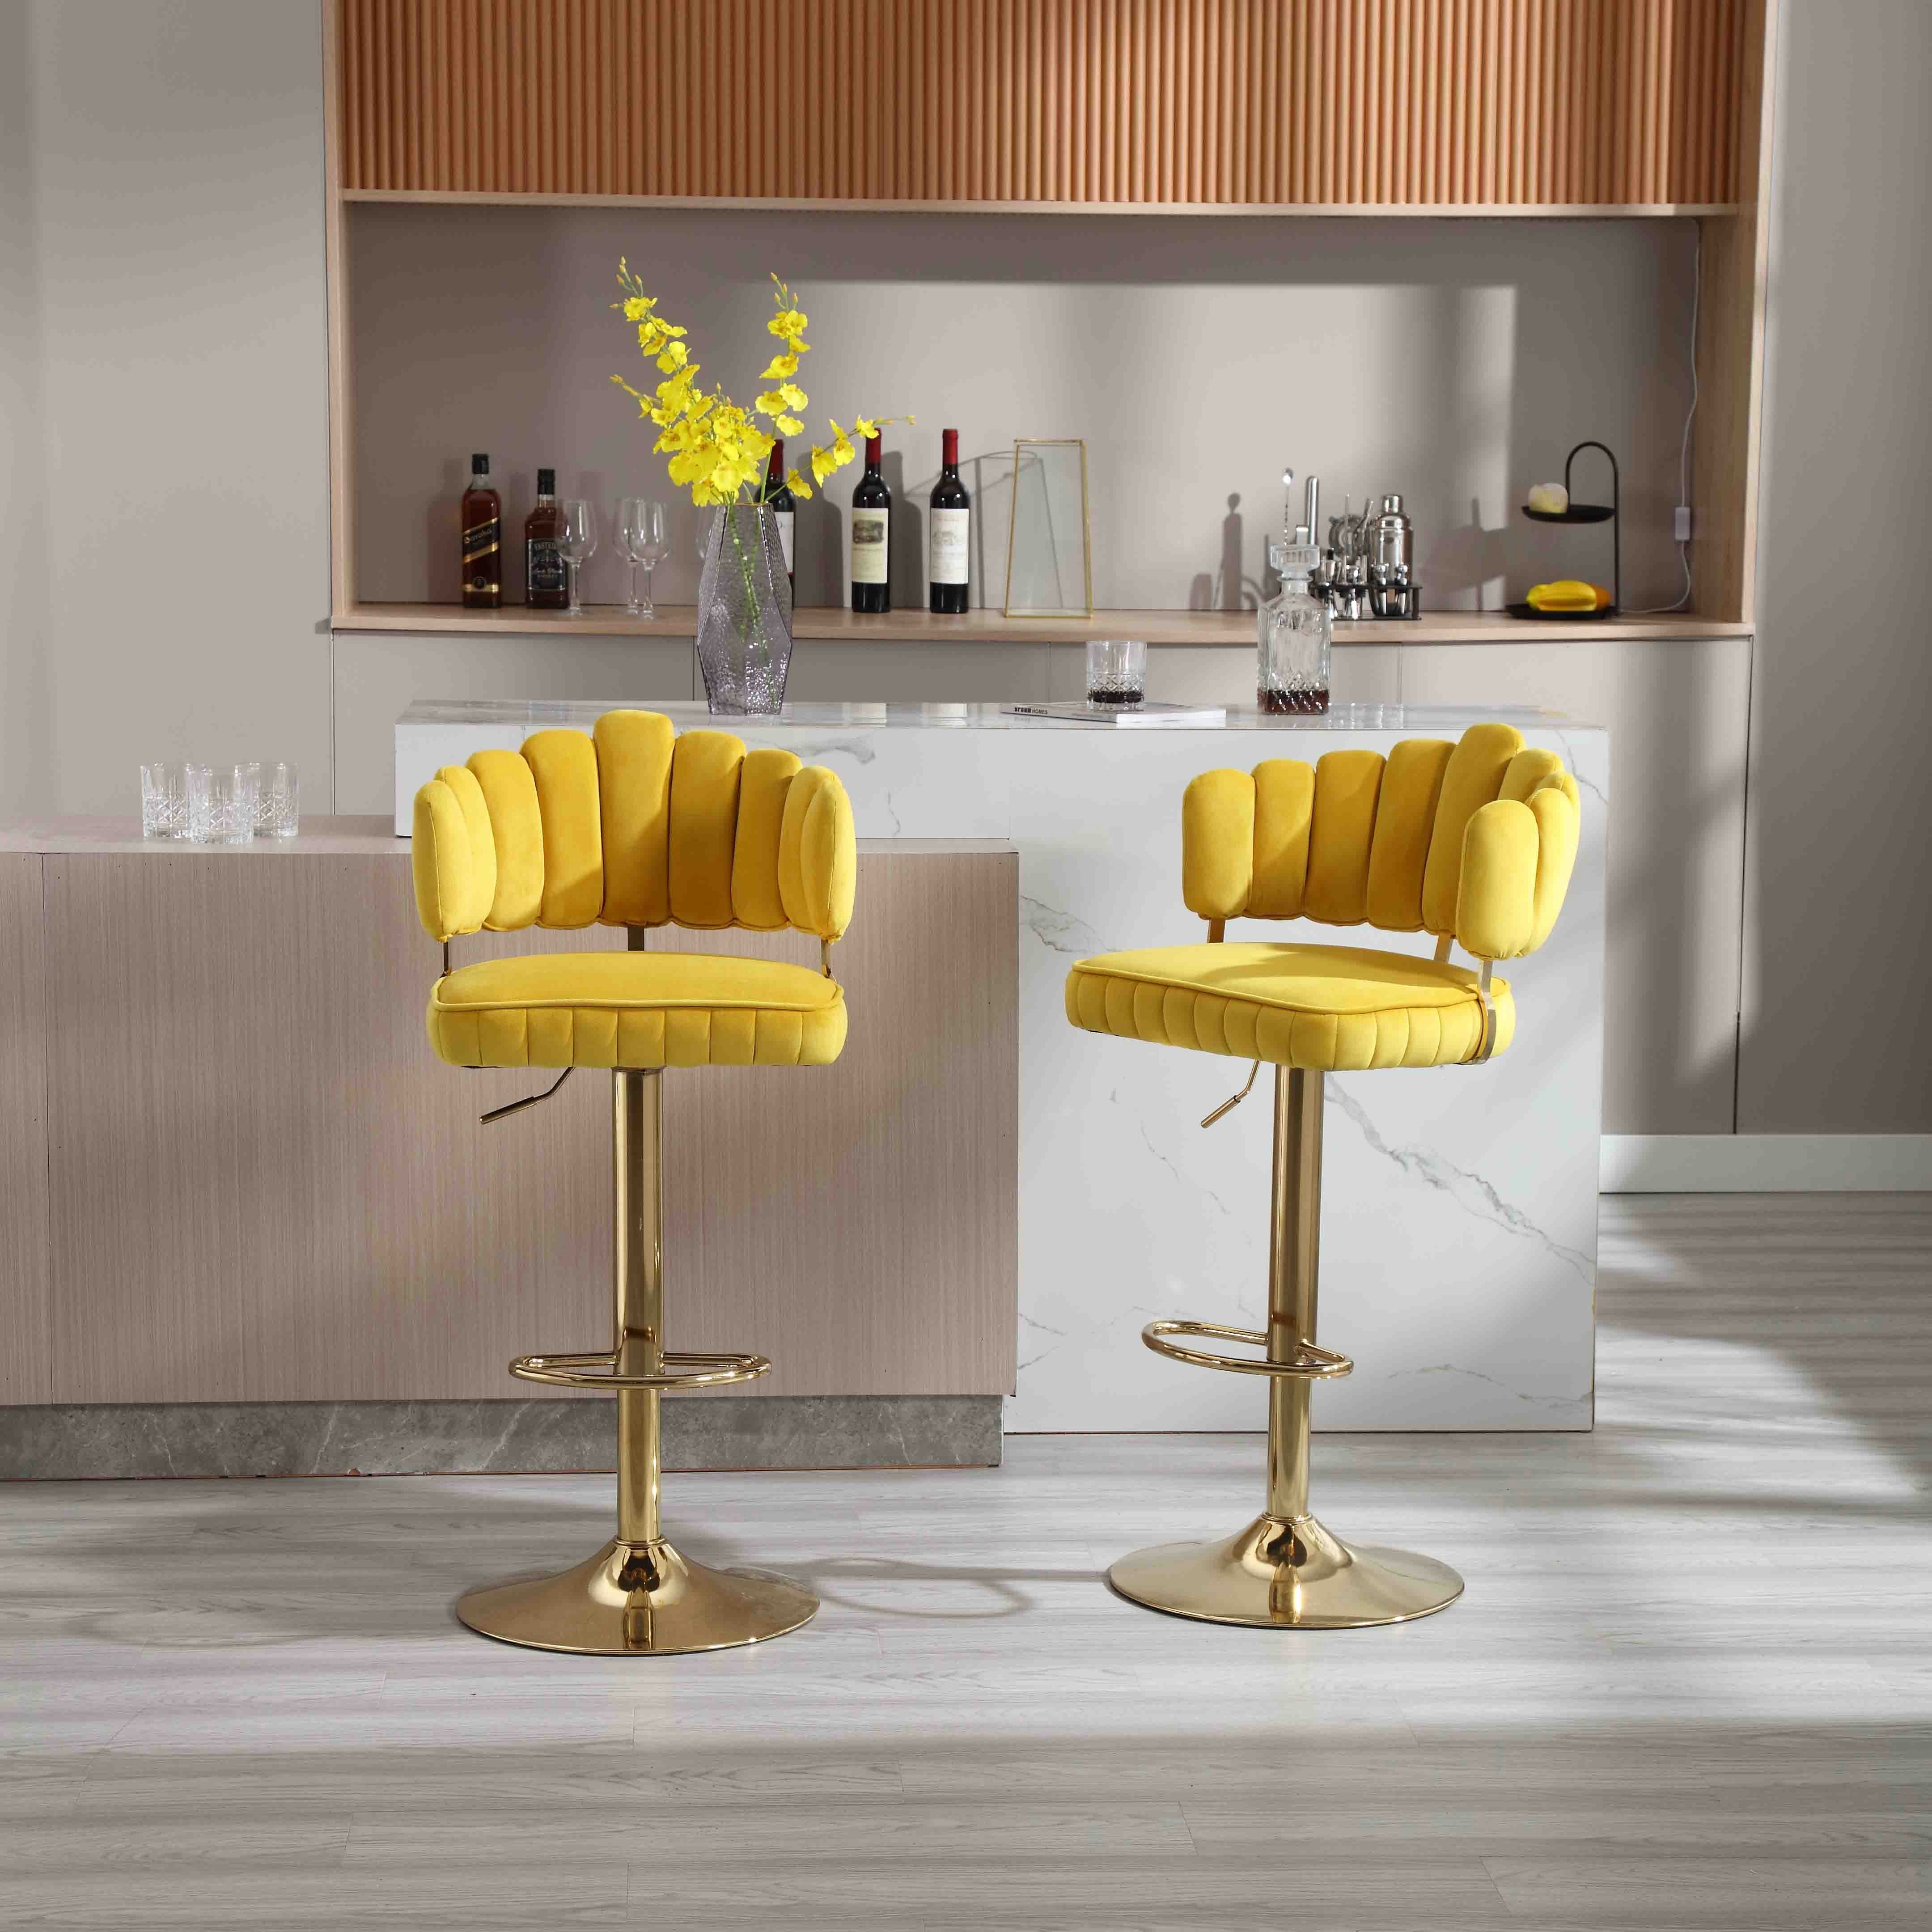 WISHDOR Barhocker Drehhocker, Drehbare Barhocker-Set mit 2 verstellbaren Tresenstühlen (Barstühle mit Fußstütze für Küche und Esszimmer) gelb